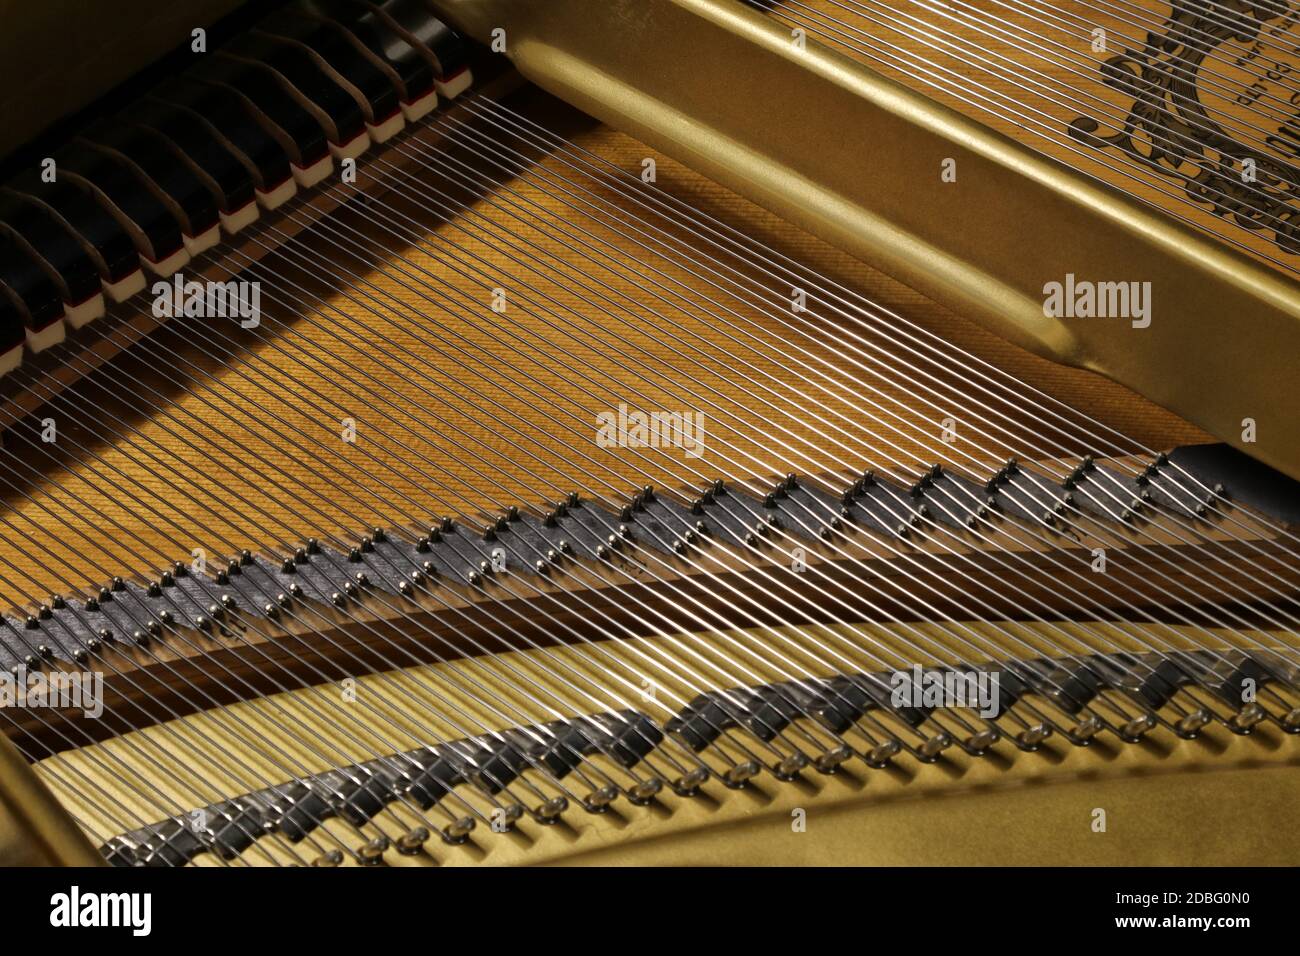 Gran piano, detalle de la arquitectura interna y cuerdas musicales Foto de stock